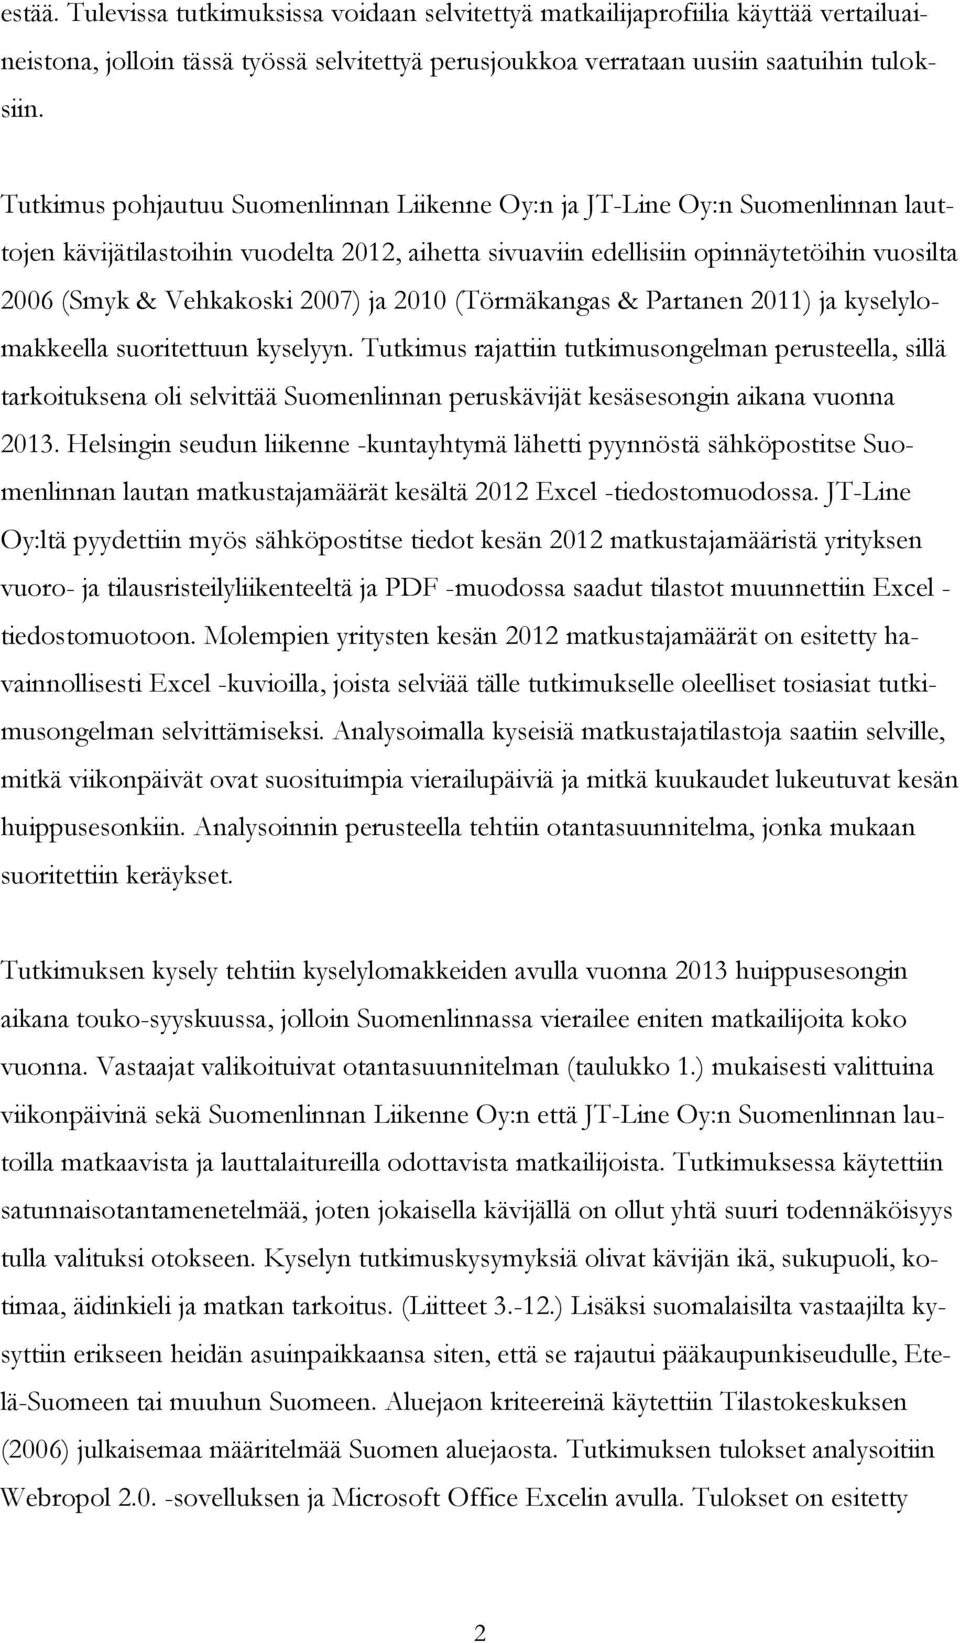 2007) ja 2010 (Törmäkangas & Partanen 2011) ja kyselylomakkeella suoritettuun kyselyyn.